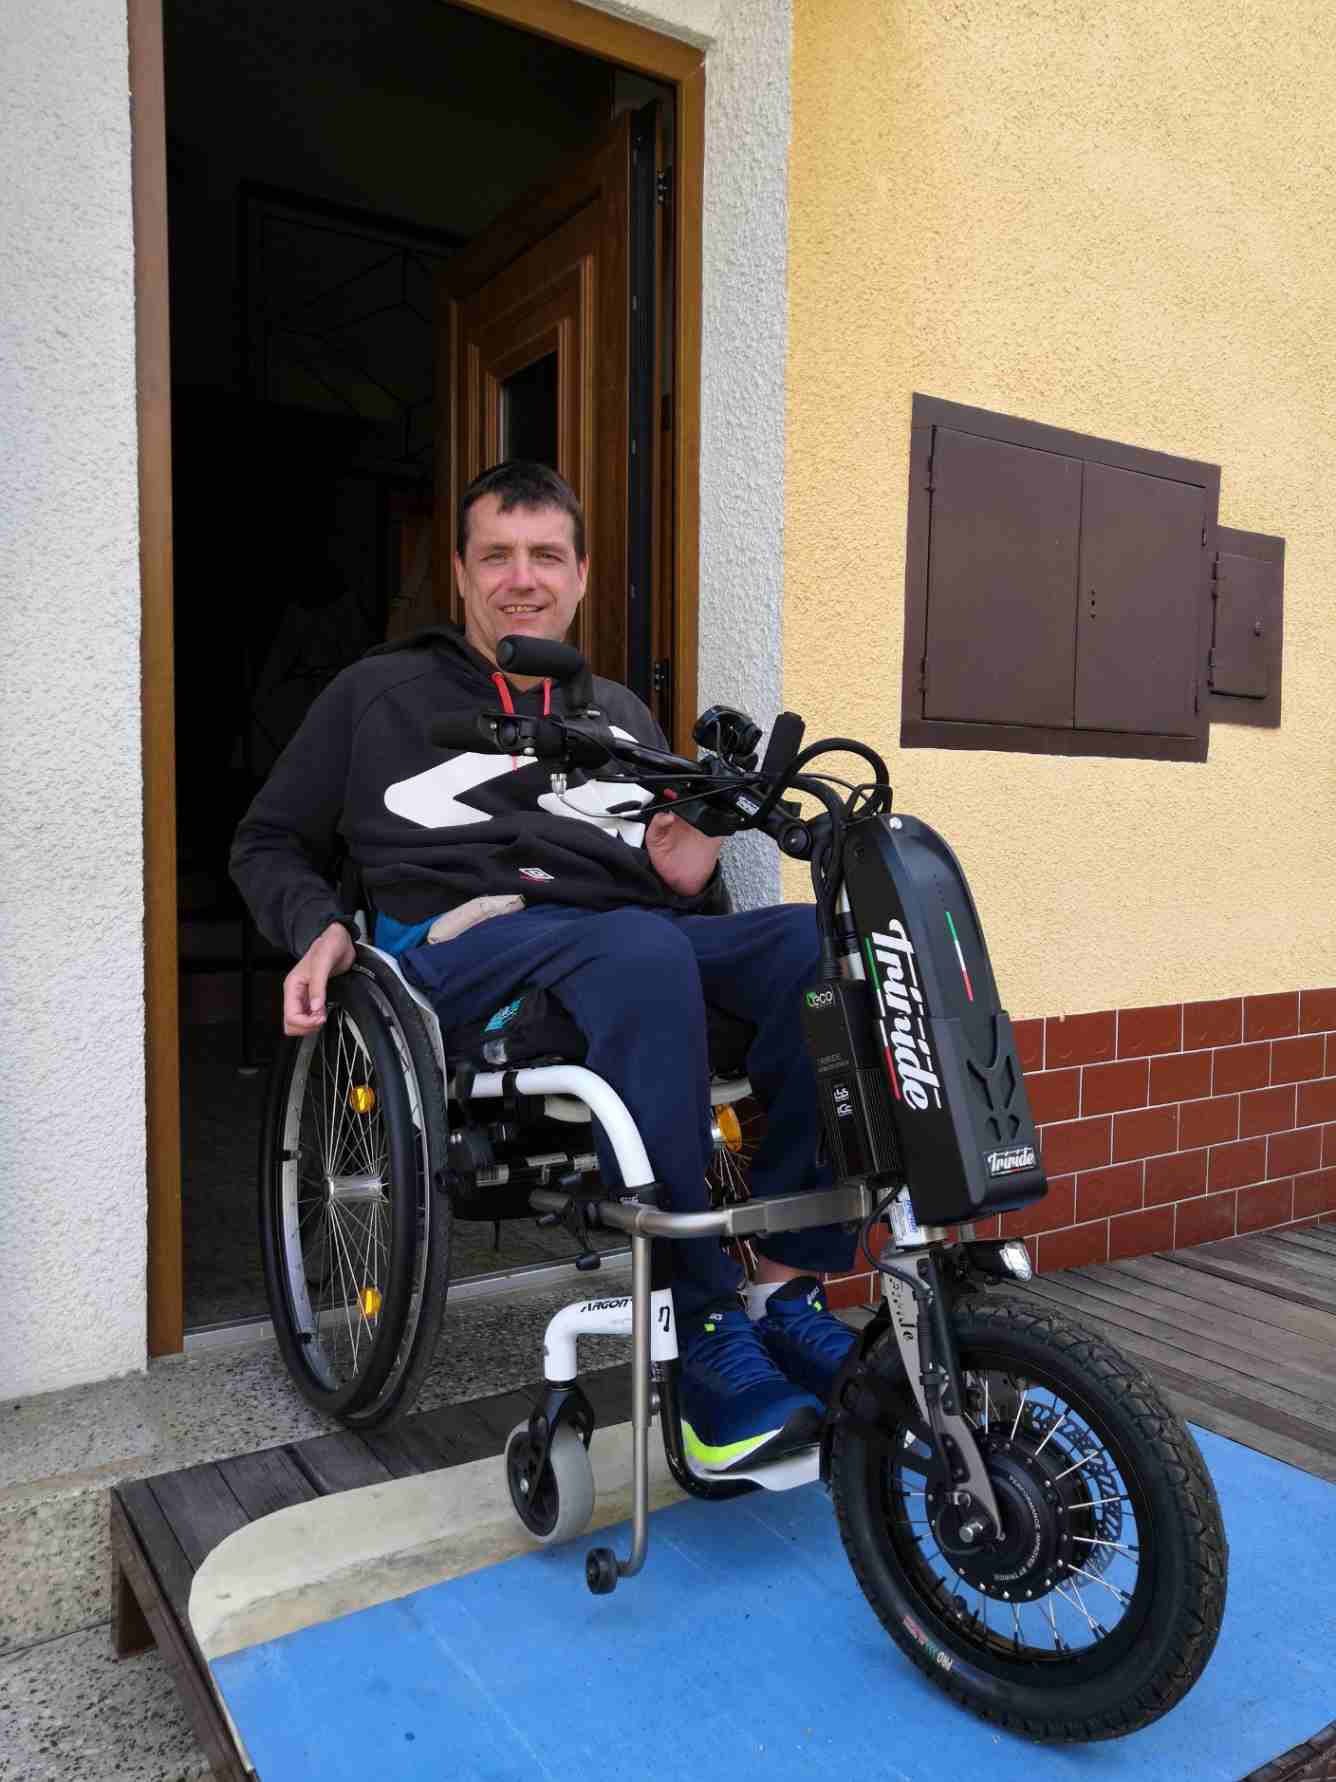 nadace přispěla částkou 20 tisíc korun na pořízení elektrického přídavného pohonu vozíku